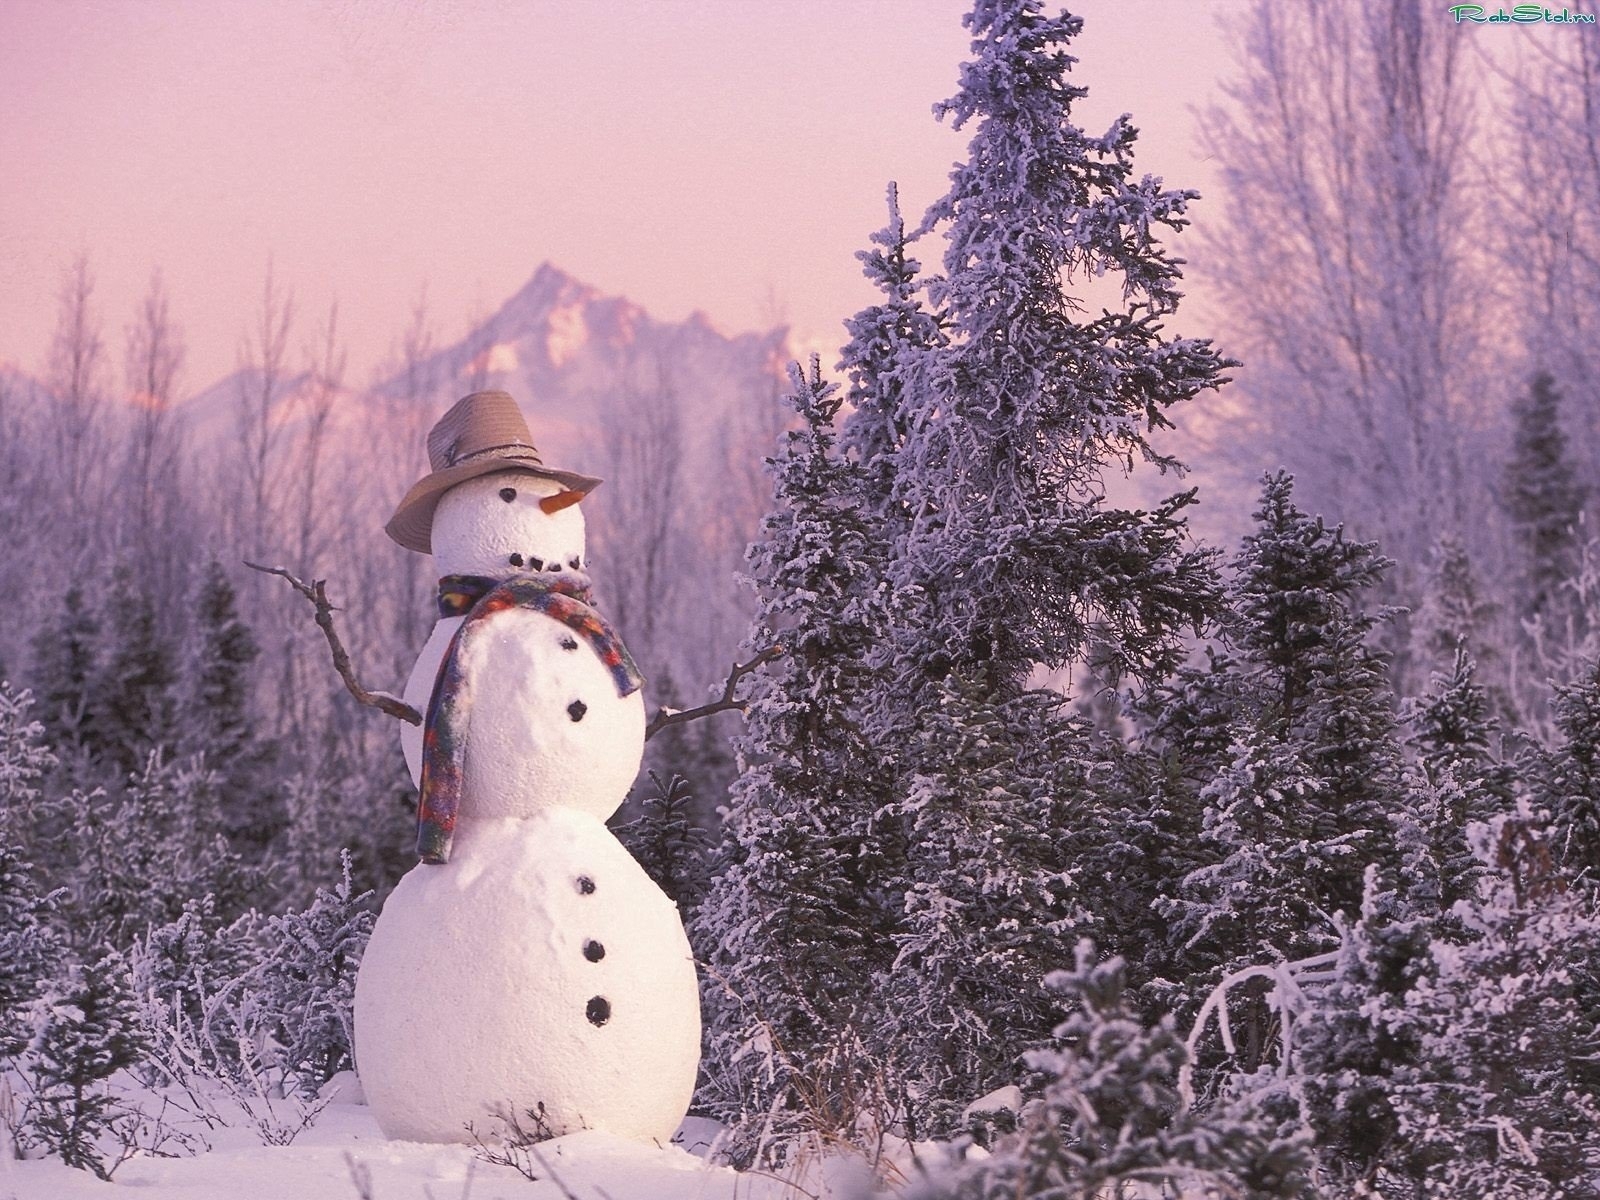 10688 Заставки и Обои Снеговики на телефон. Скачать новый год (new year), пейзаж, зима, снег, елки, рождество (christmas, xmas), снеговики картинки бесплатно